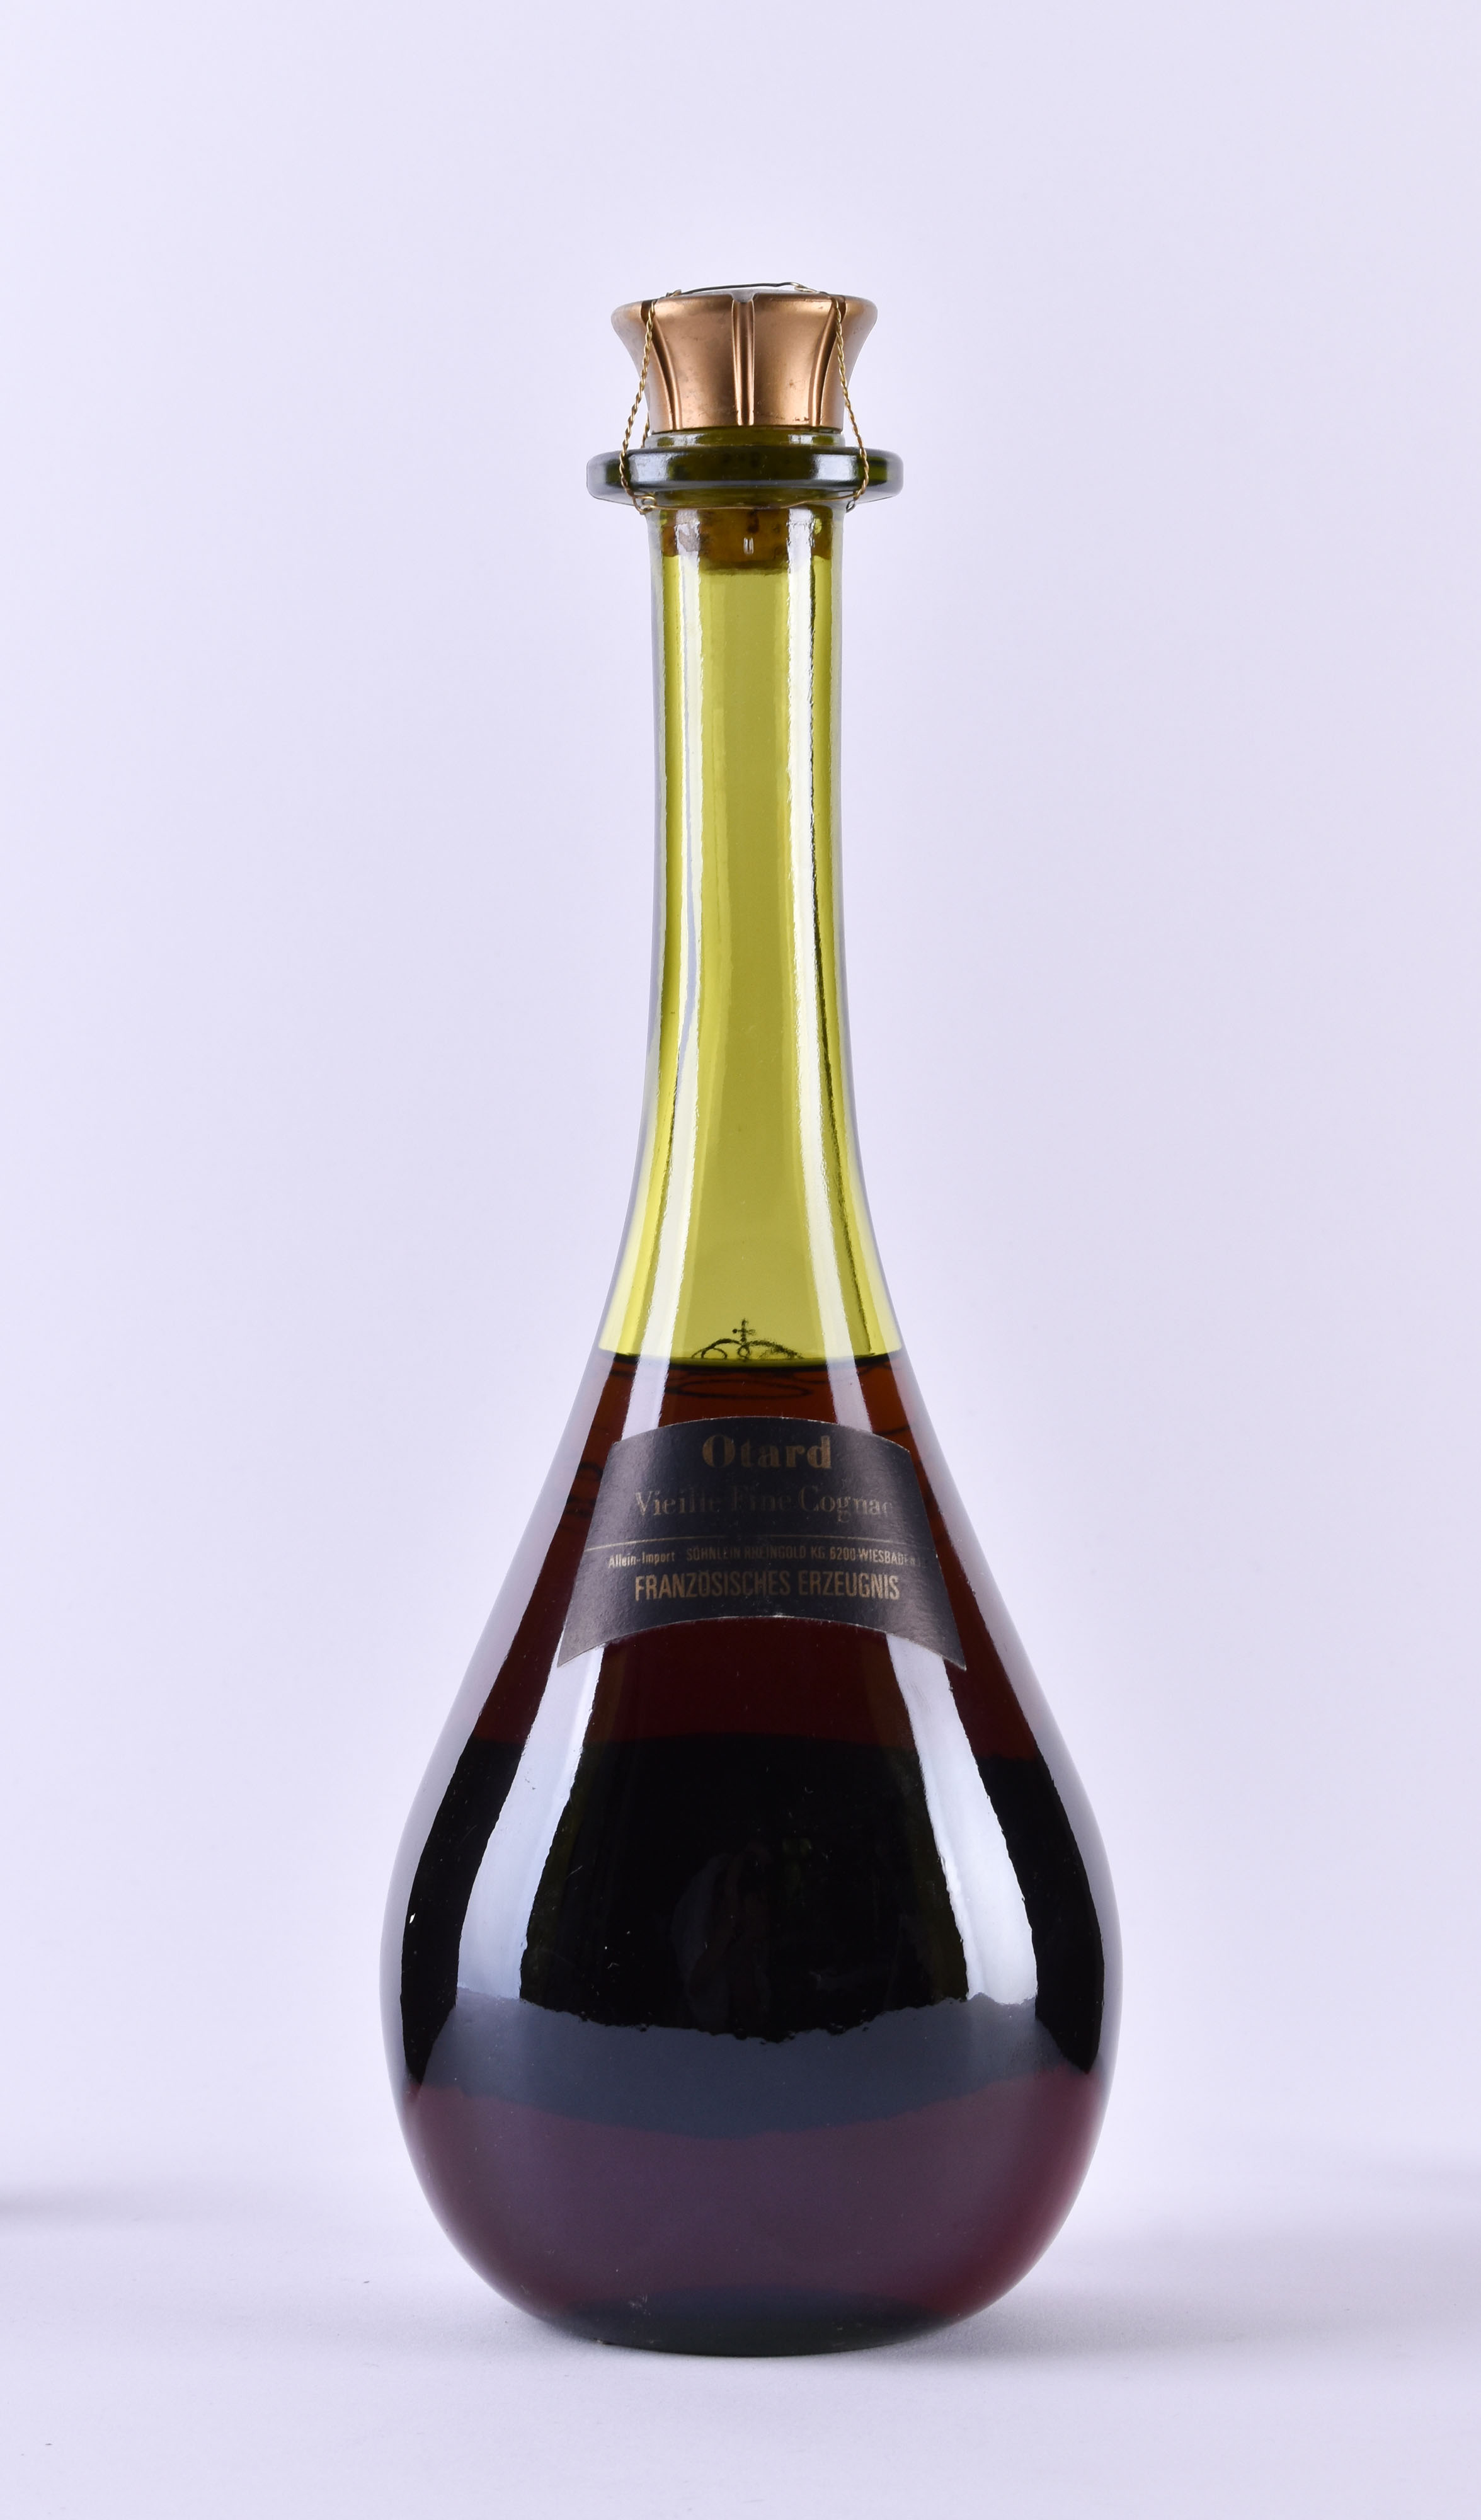 Otard Vieille Fine Champagne Prince de Cognac - Image 2 of 2